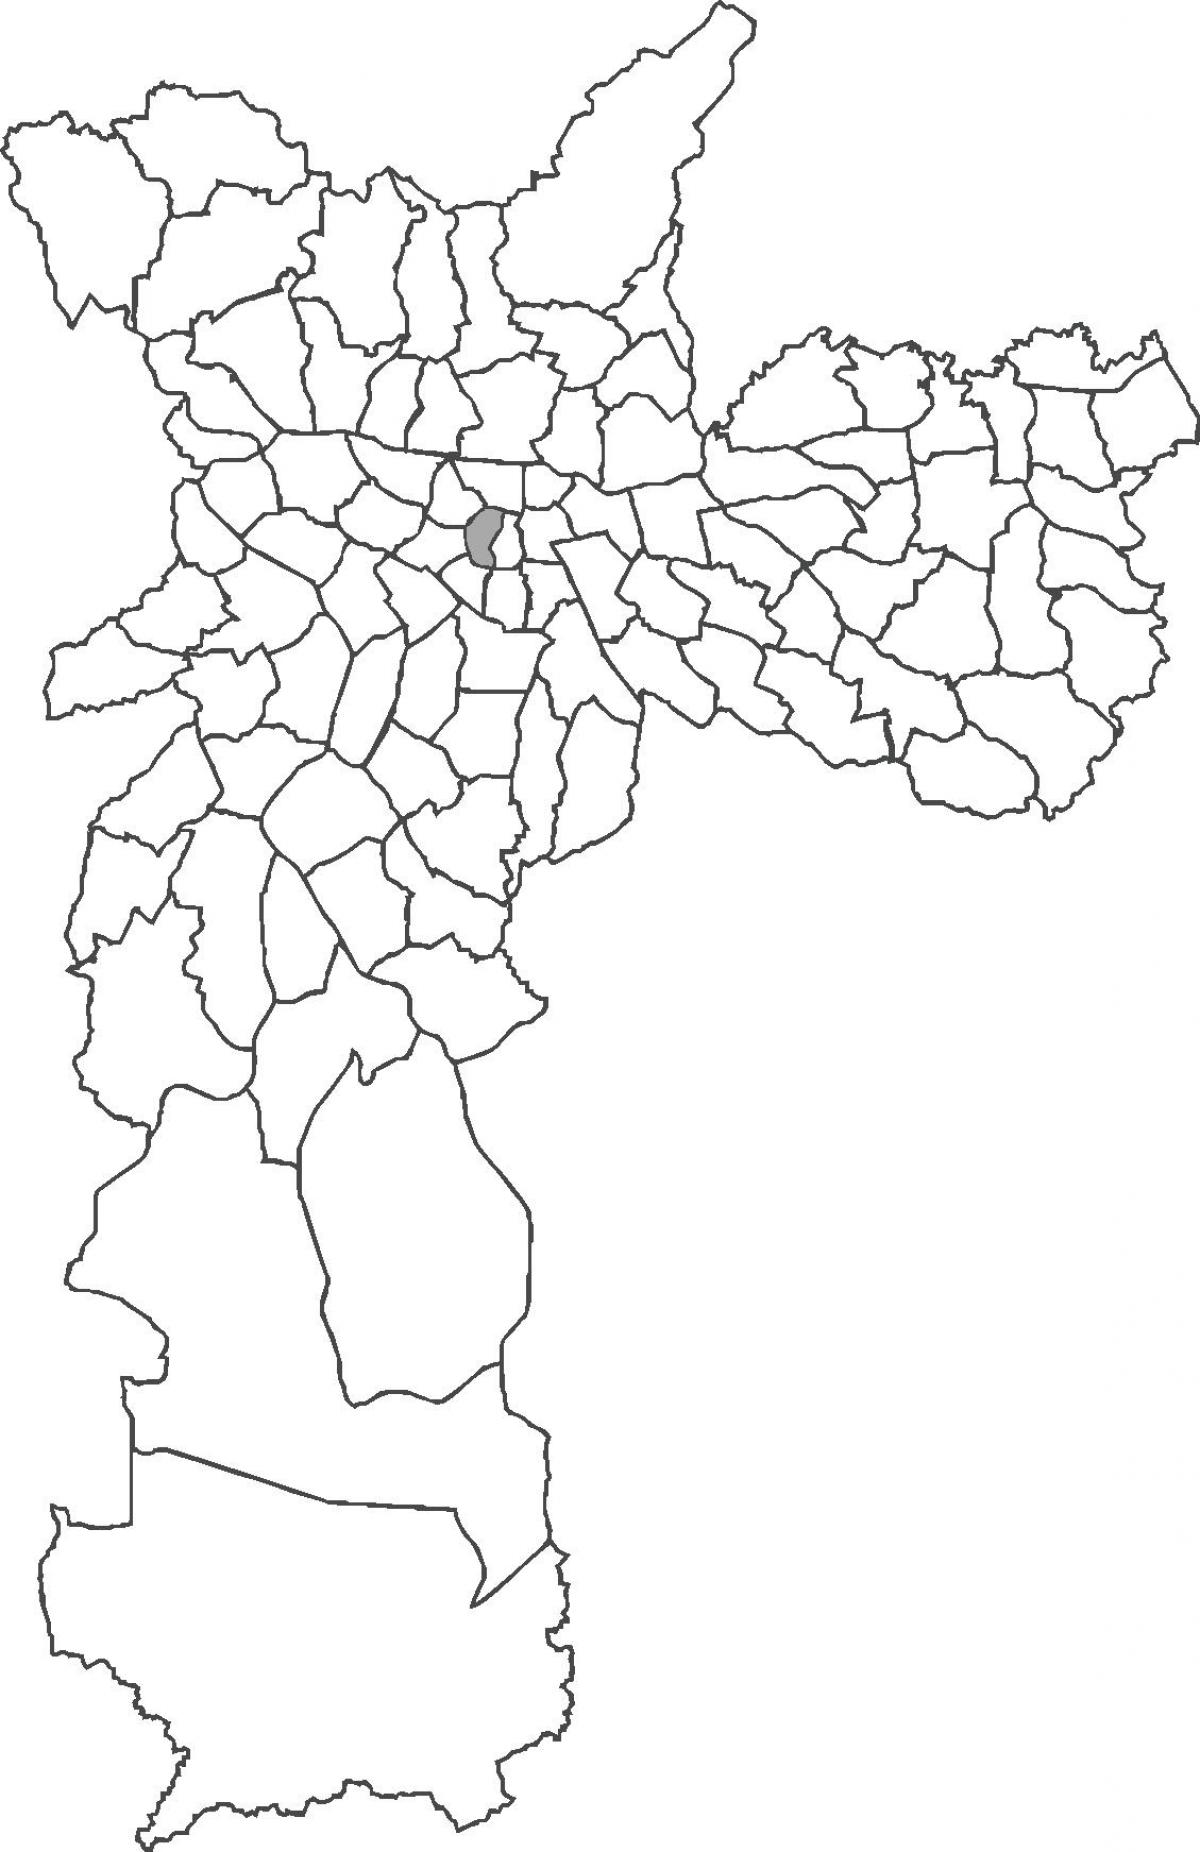 แผนที่ของ República เขต